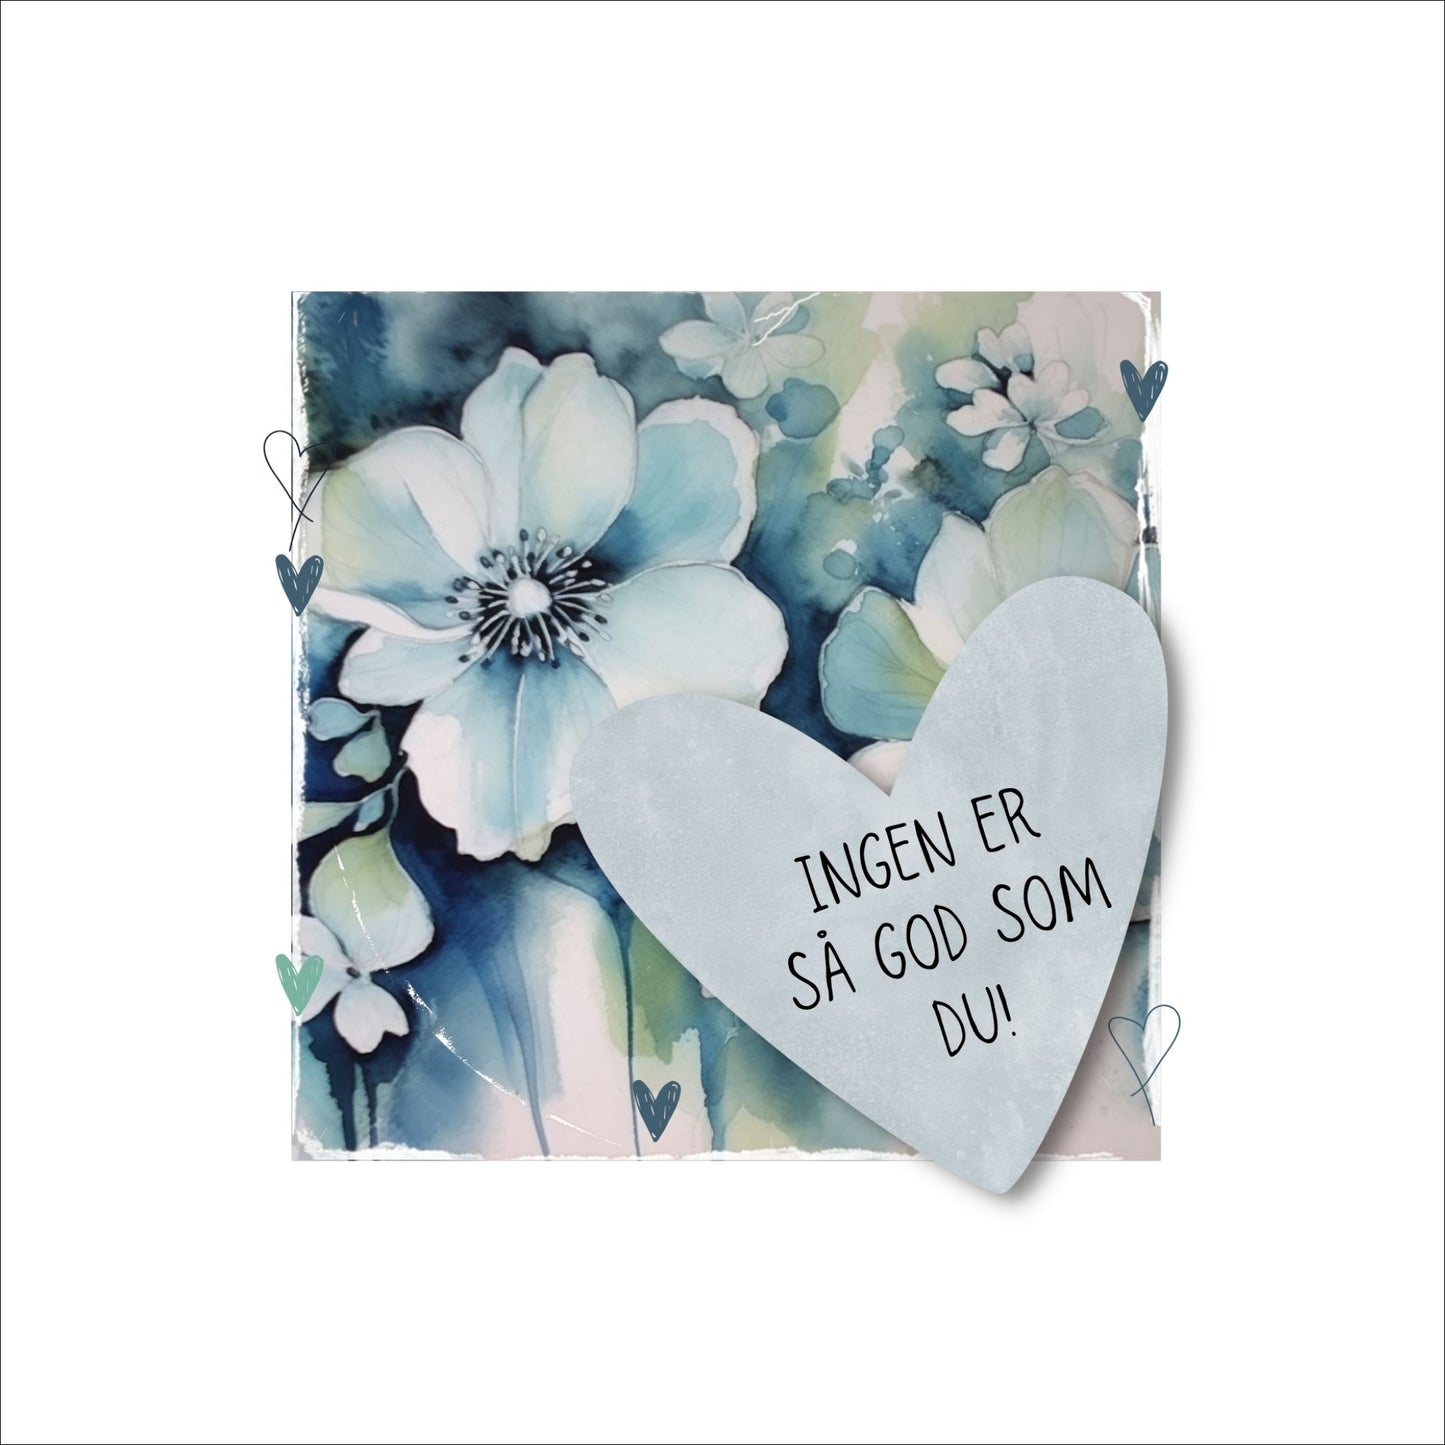 Grafisk plakat med et lyseblått hjerte påført tekst "Ingen er så god som du!". Bagrunn med blomster i blåtoner. Kortet har en hvit kant rundt på 4 cm.